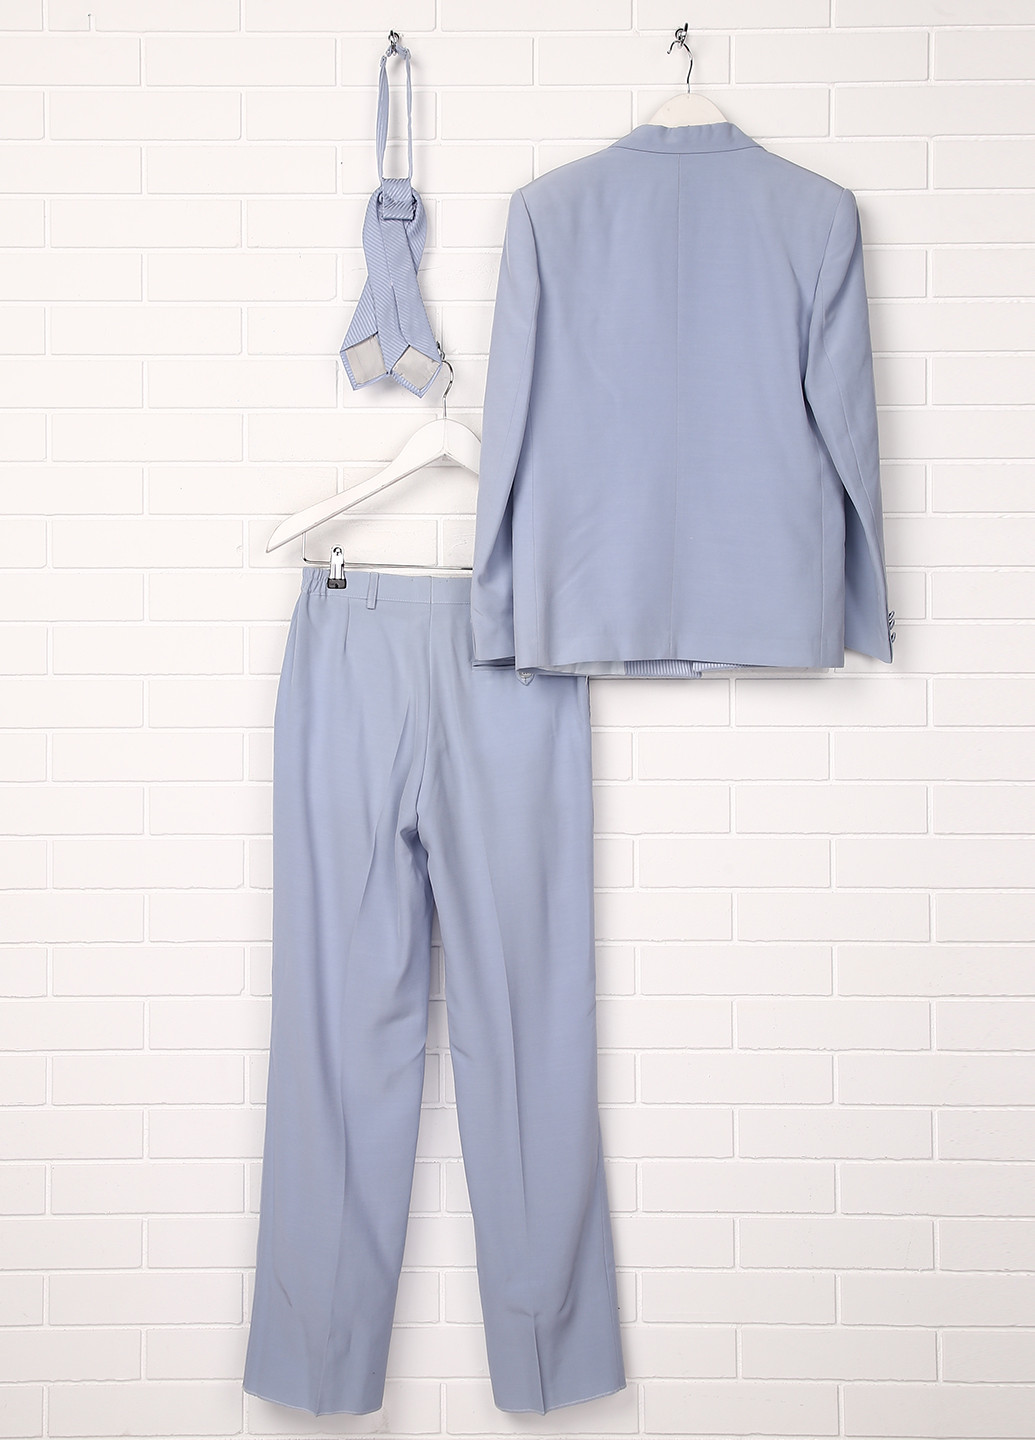 Небесно-голубой демисезонный костюм (пиджак, брюки, галстук) брючный Malip